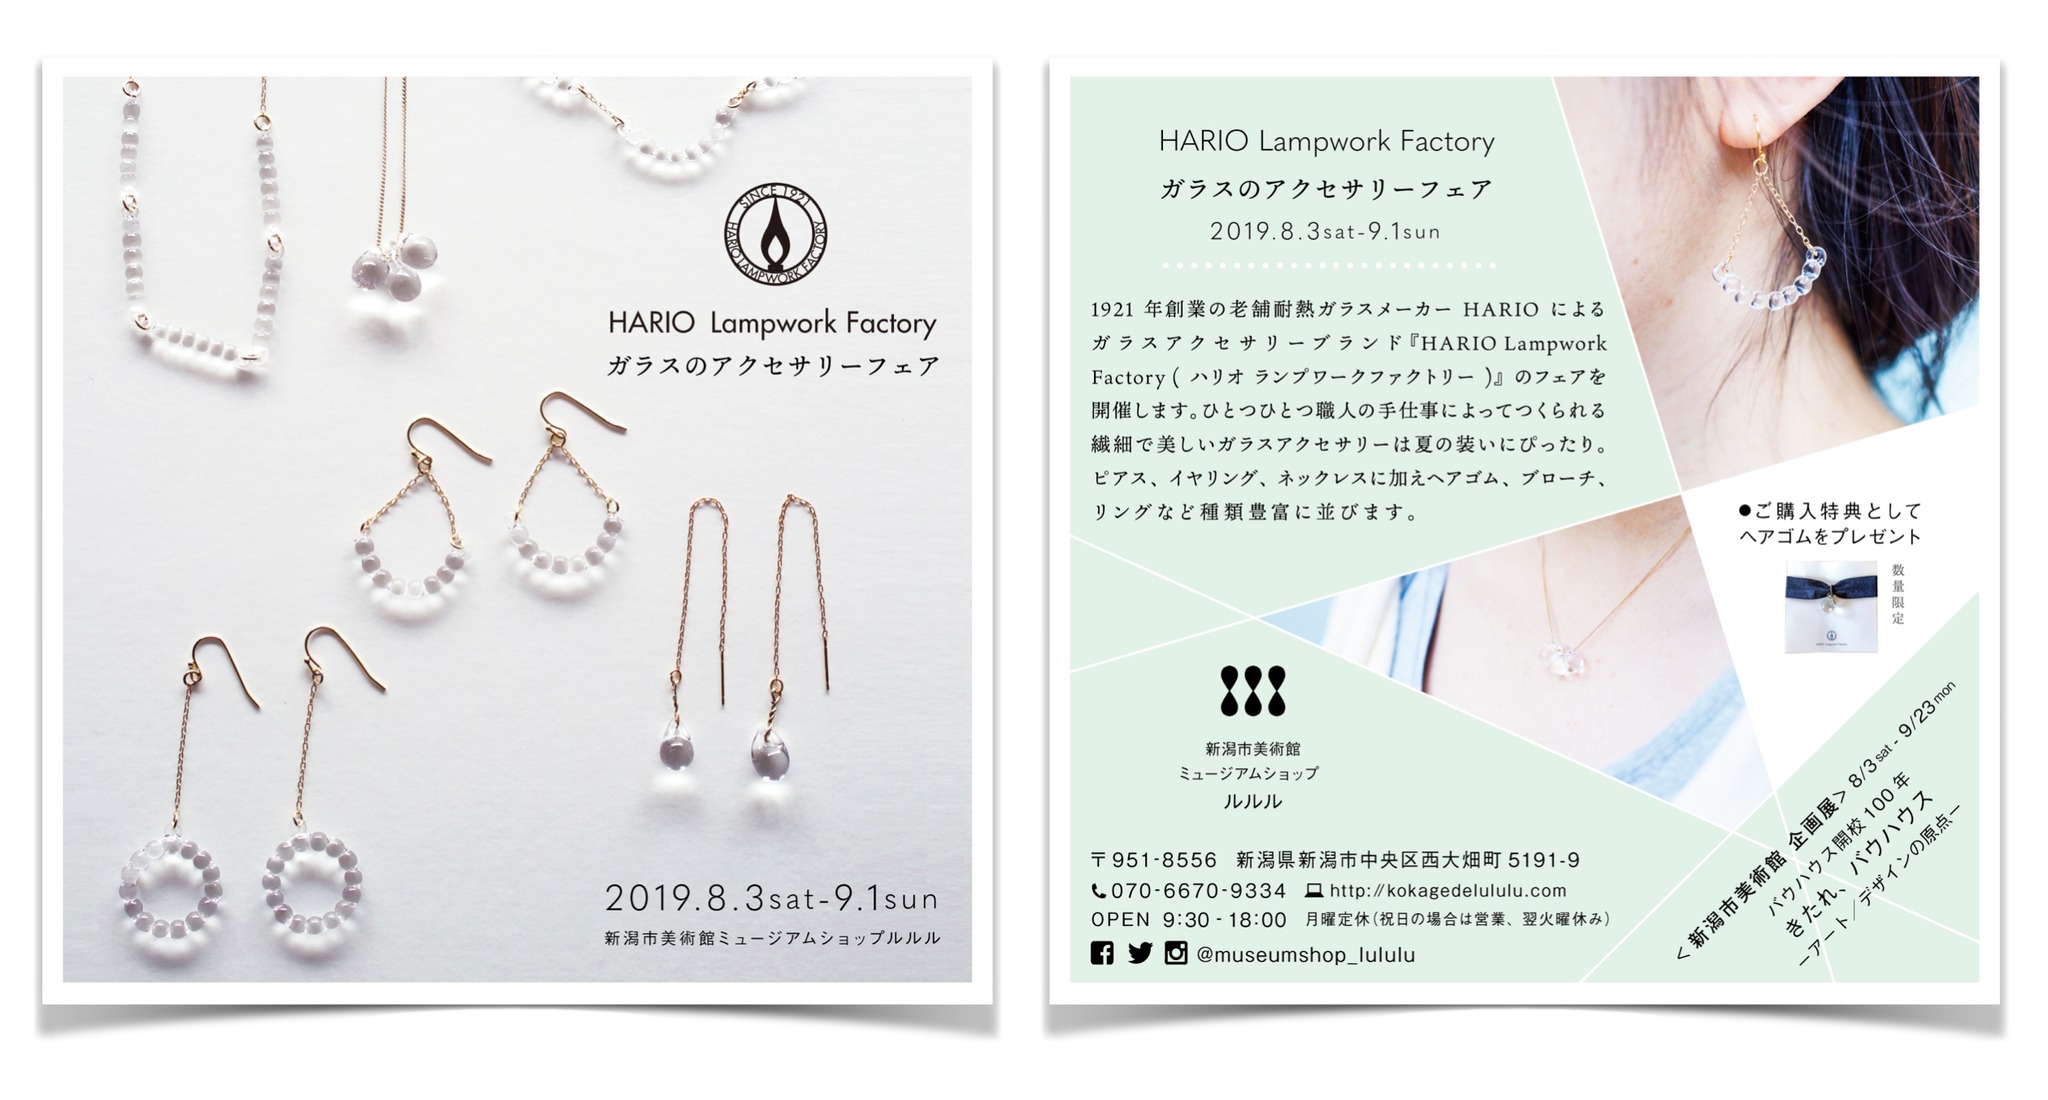 8月3日から開催 Hario Lampwork Factory ガラスのアクセサリーフェア 新潟市美術館ミュージアムショップ ルルル